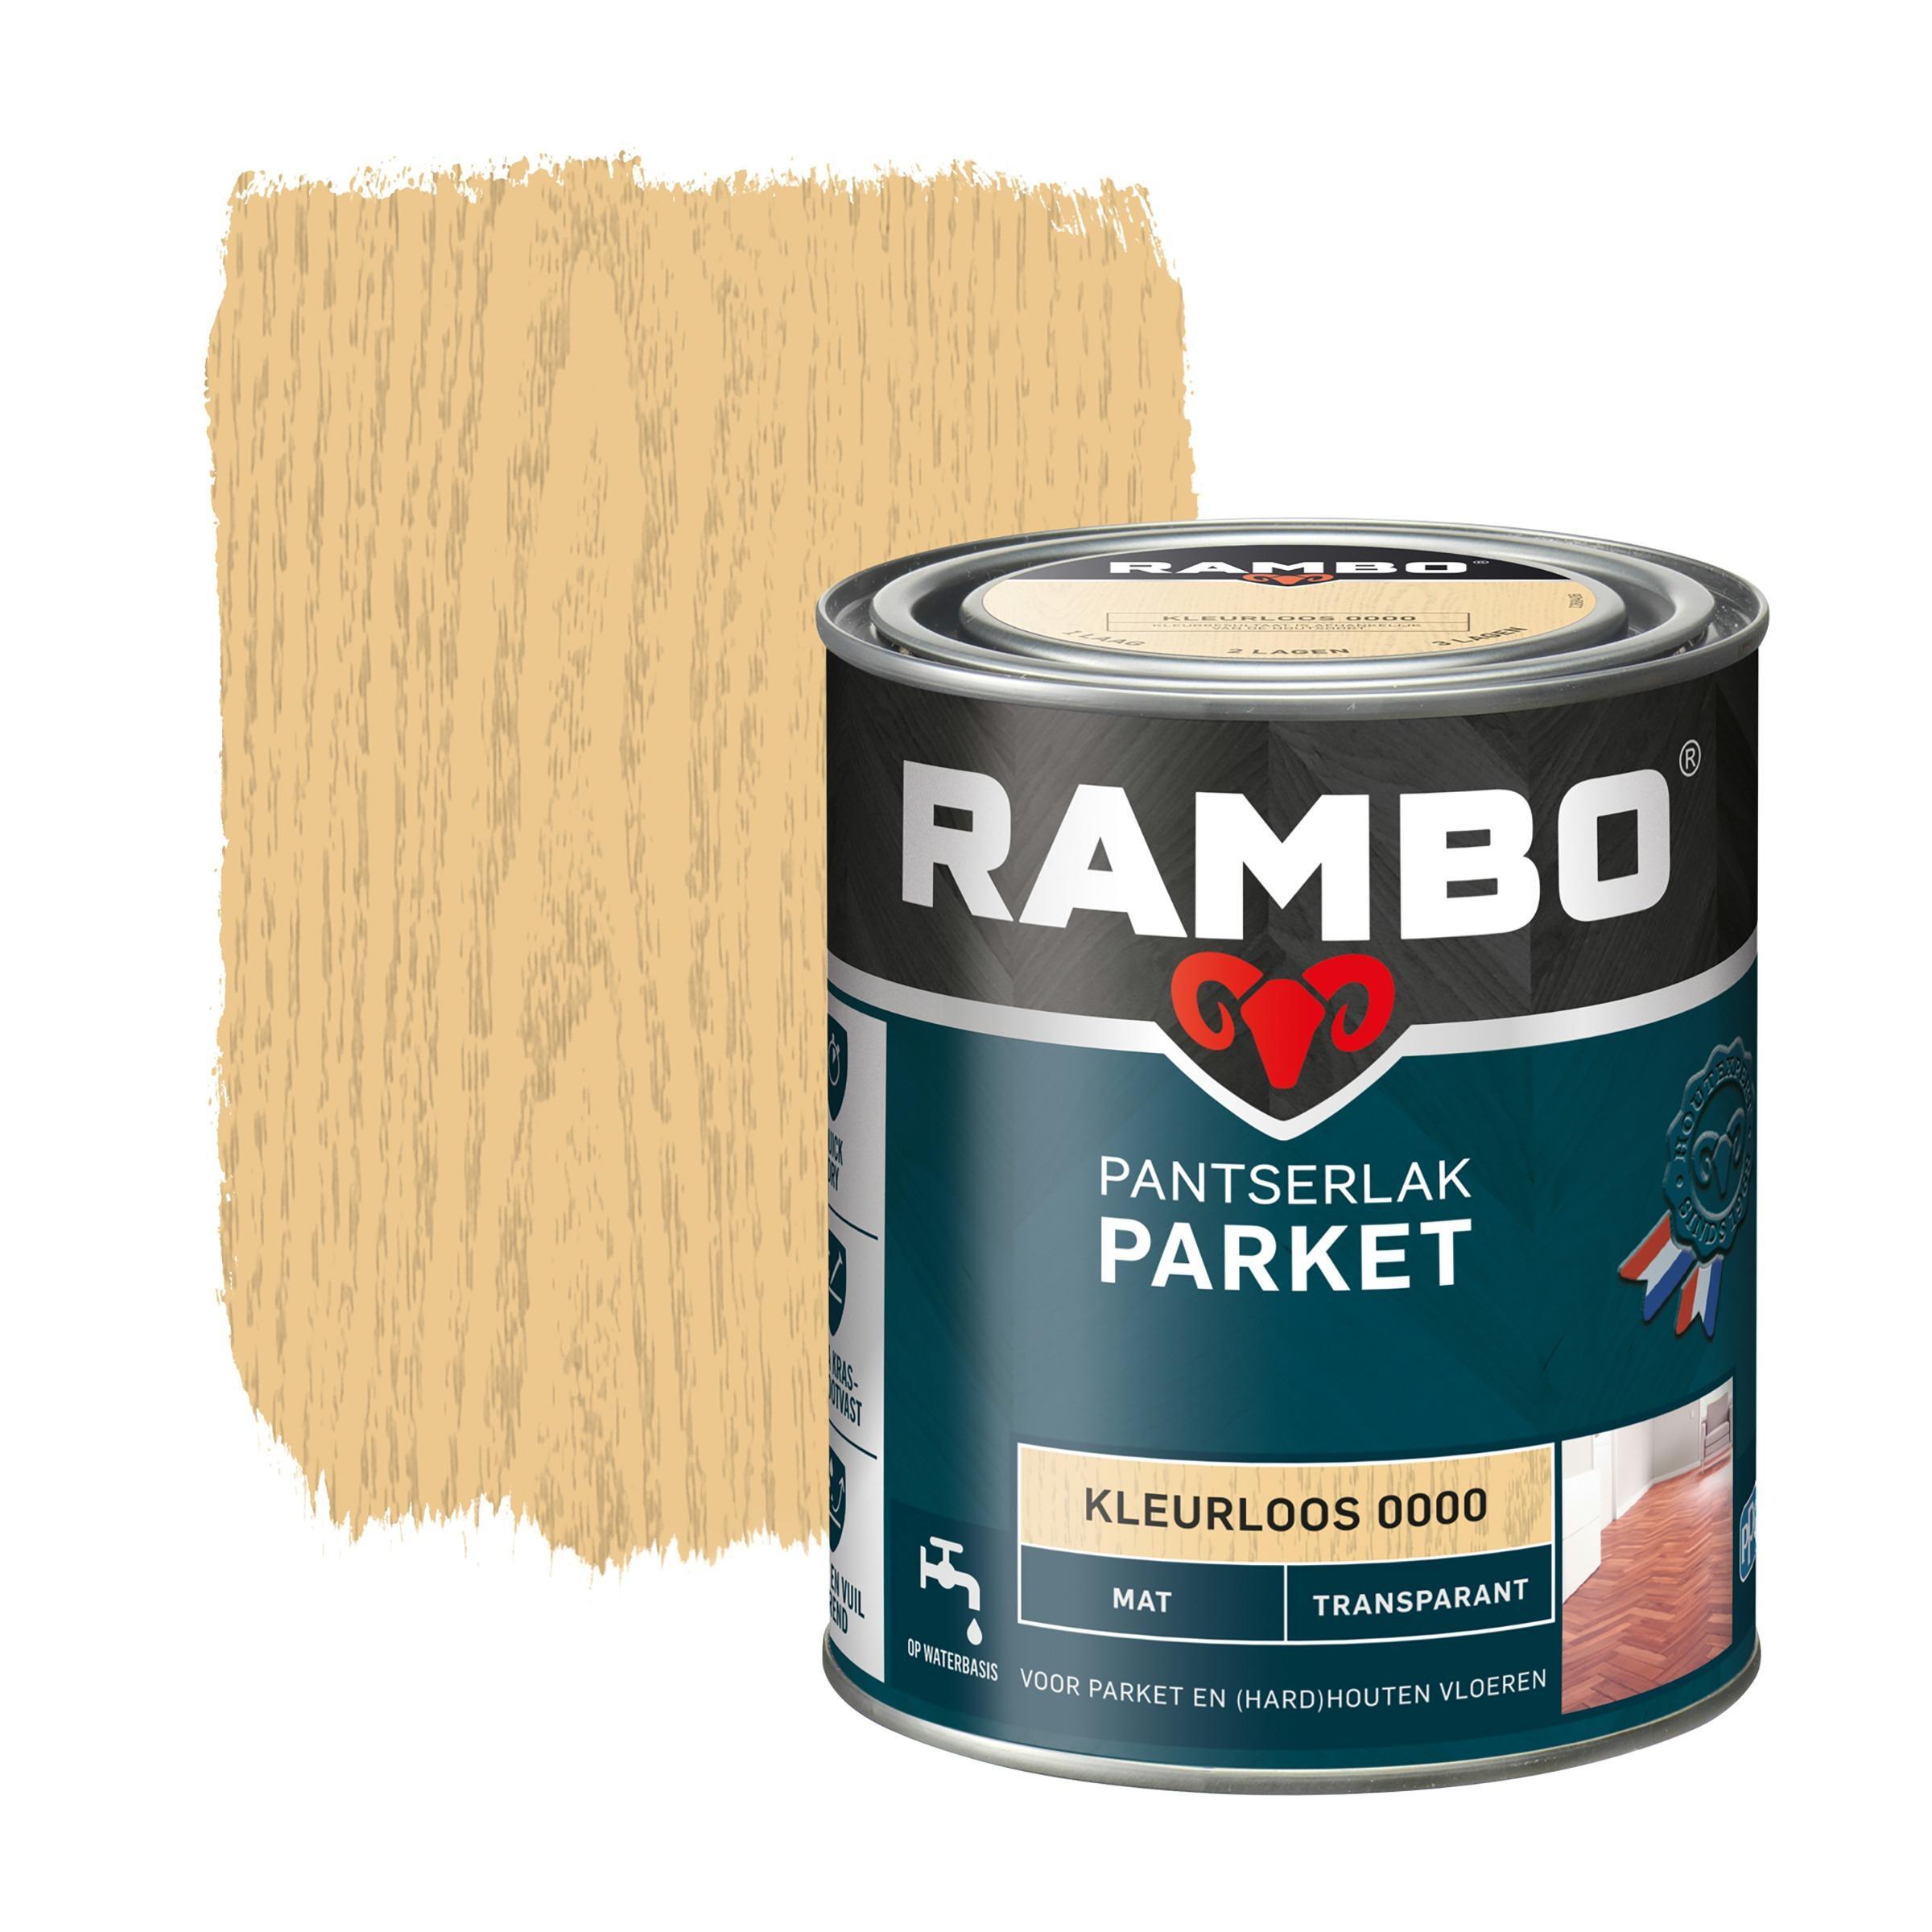 Rambo pantserlak parket transparant mat kleurloos